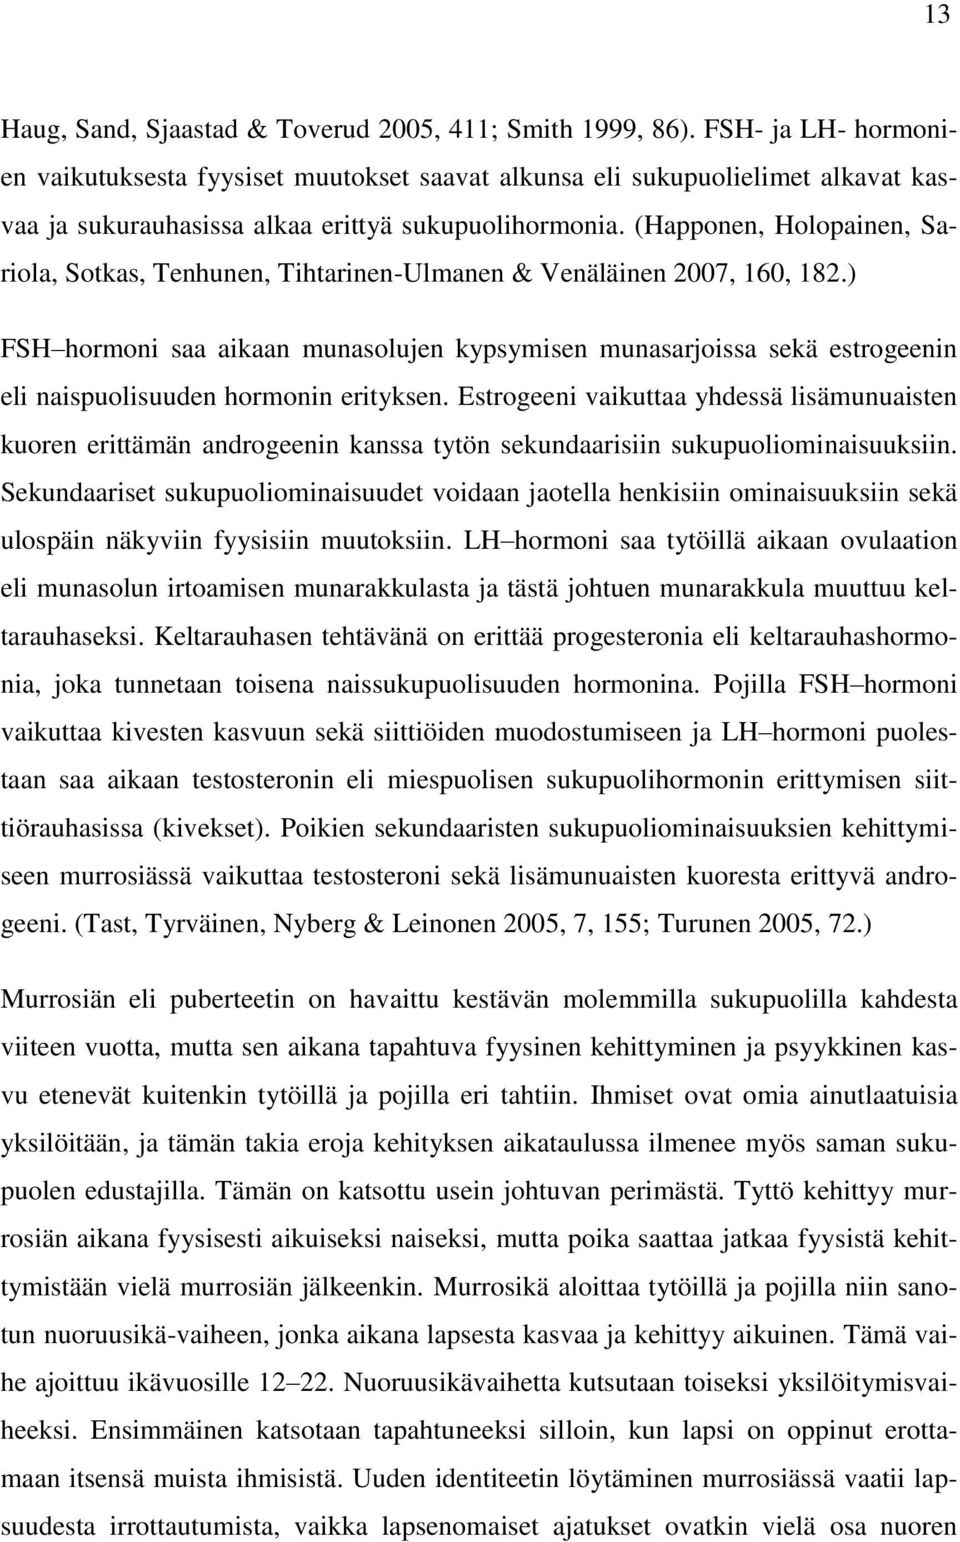 (Happonen, Holopainen, Sariola, Sotkas, Tenhunen, Tihtarinen-Ulmanen & Venäläinen 2007, 160, 182.